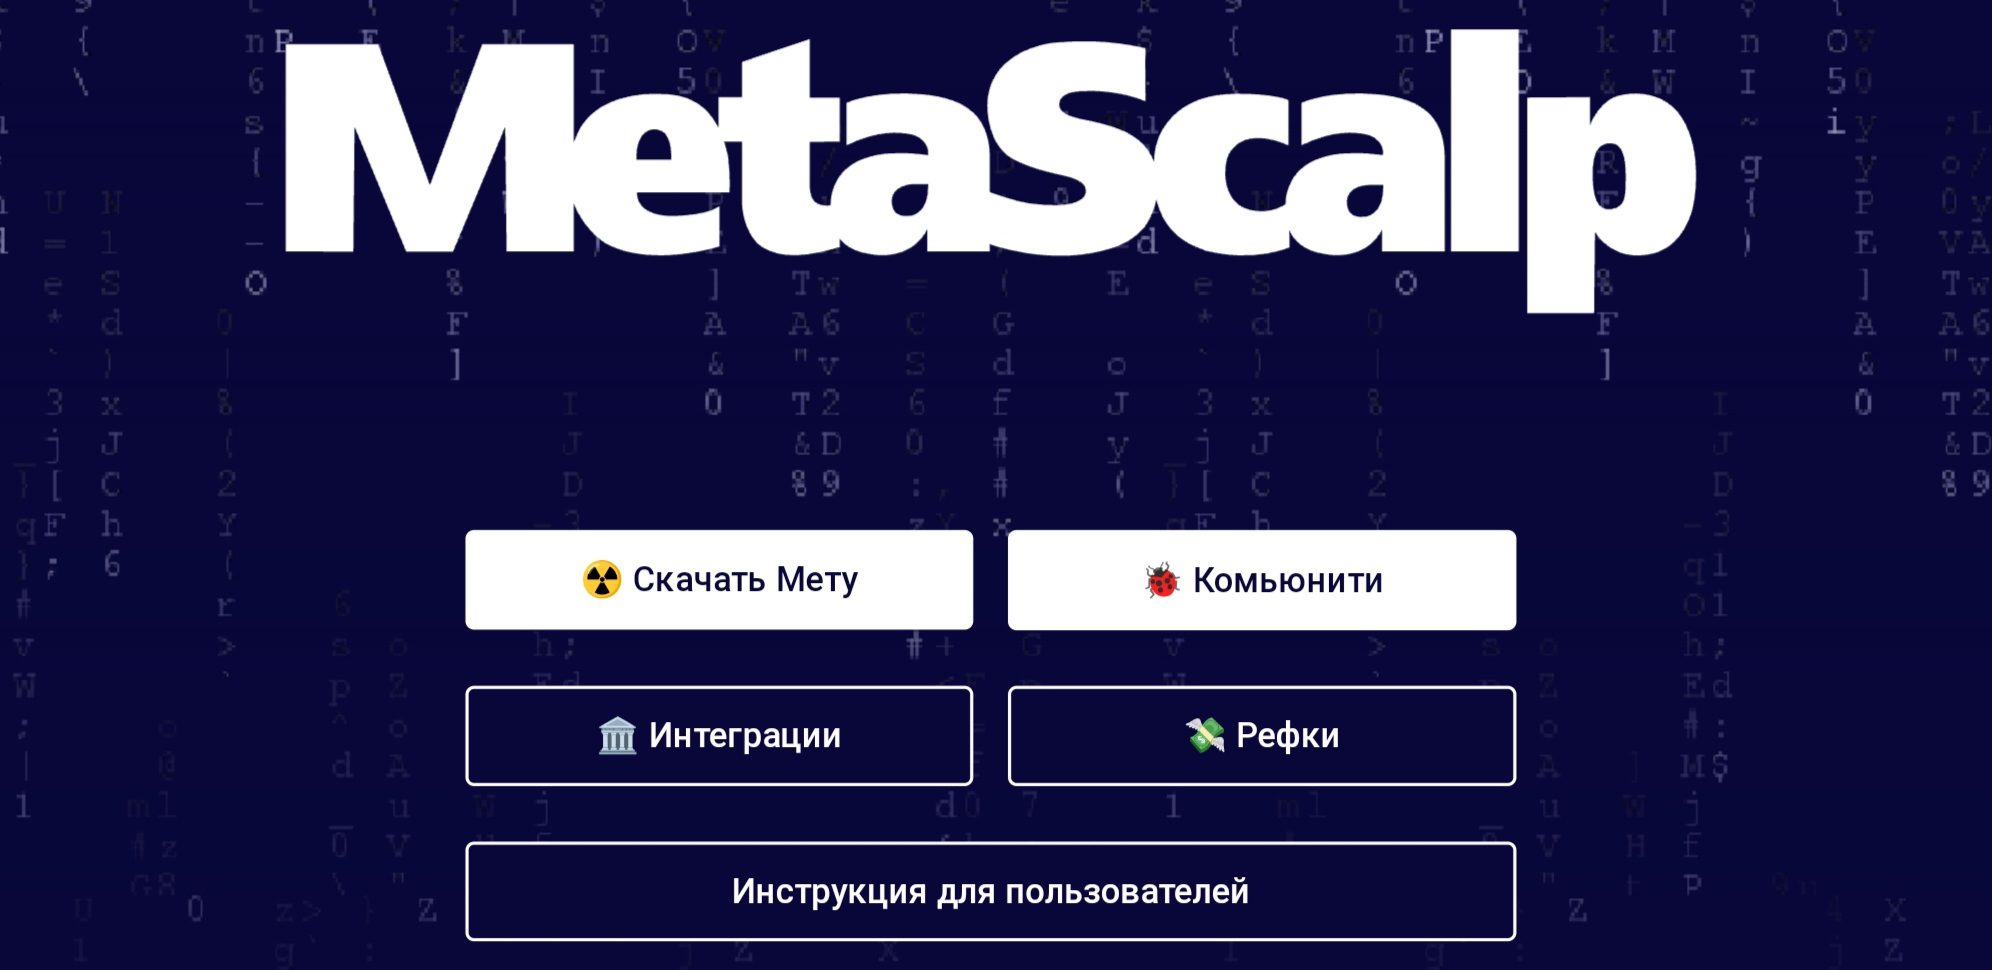 Сайт Metascalp